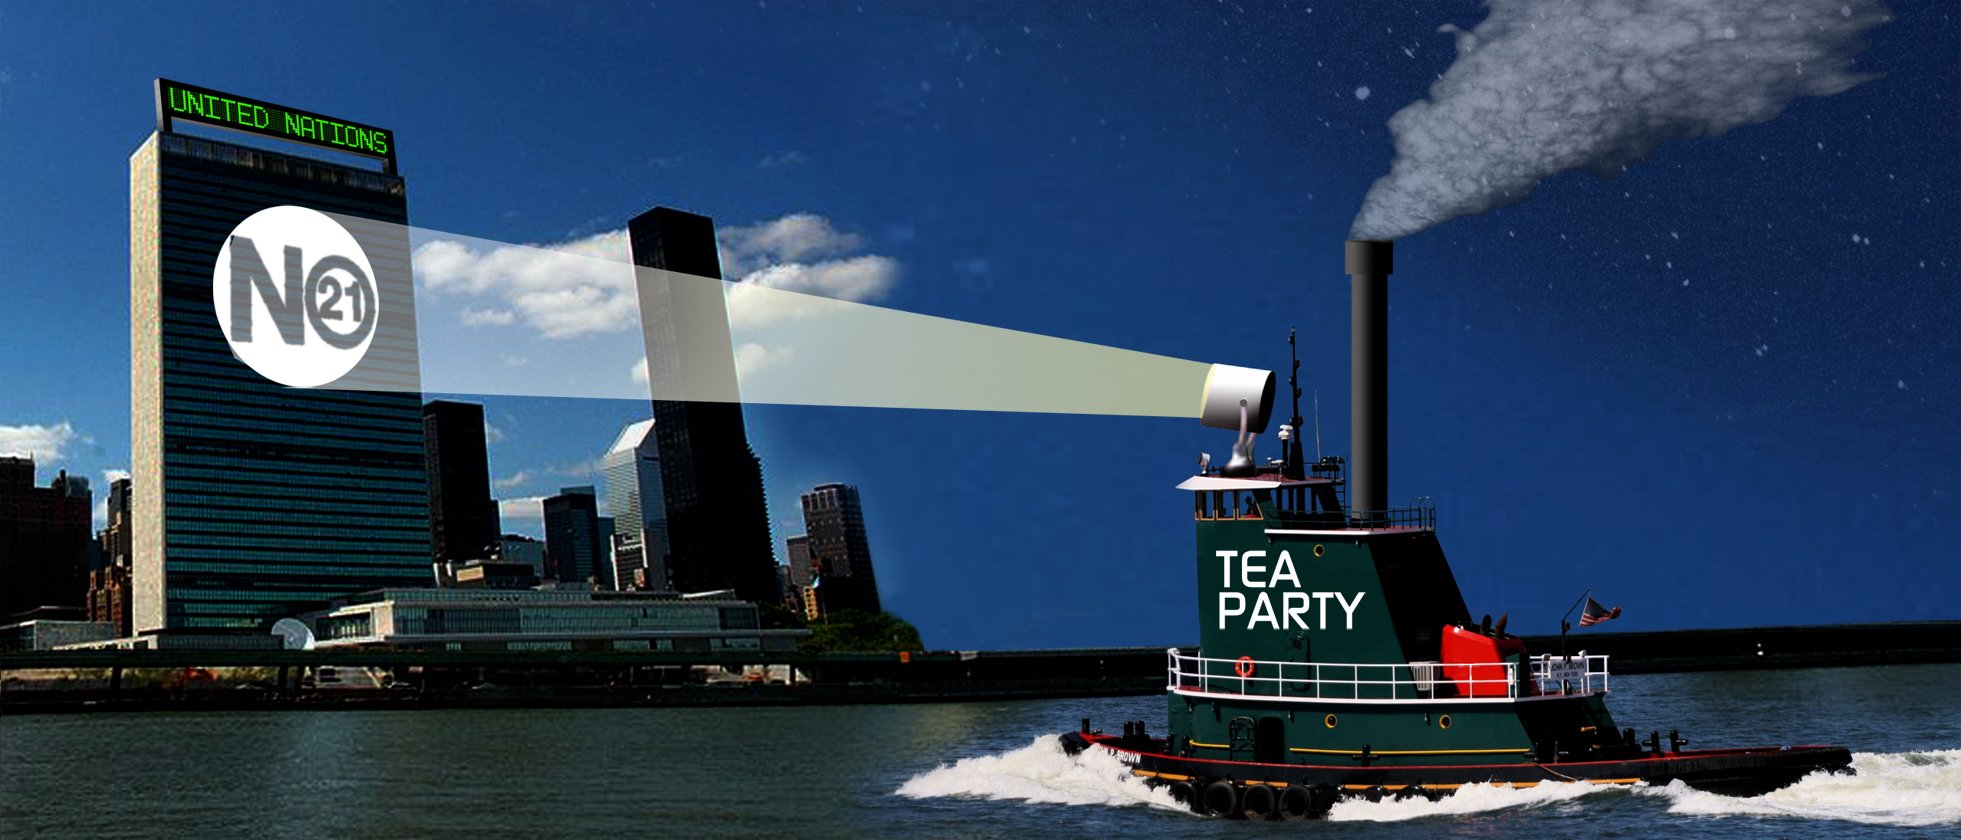 Tea_Party_at_UN_1961x840.jpg